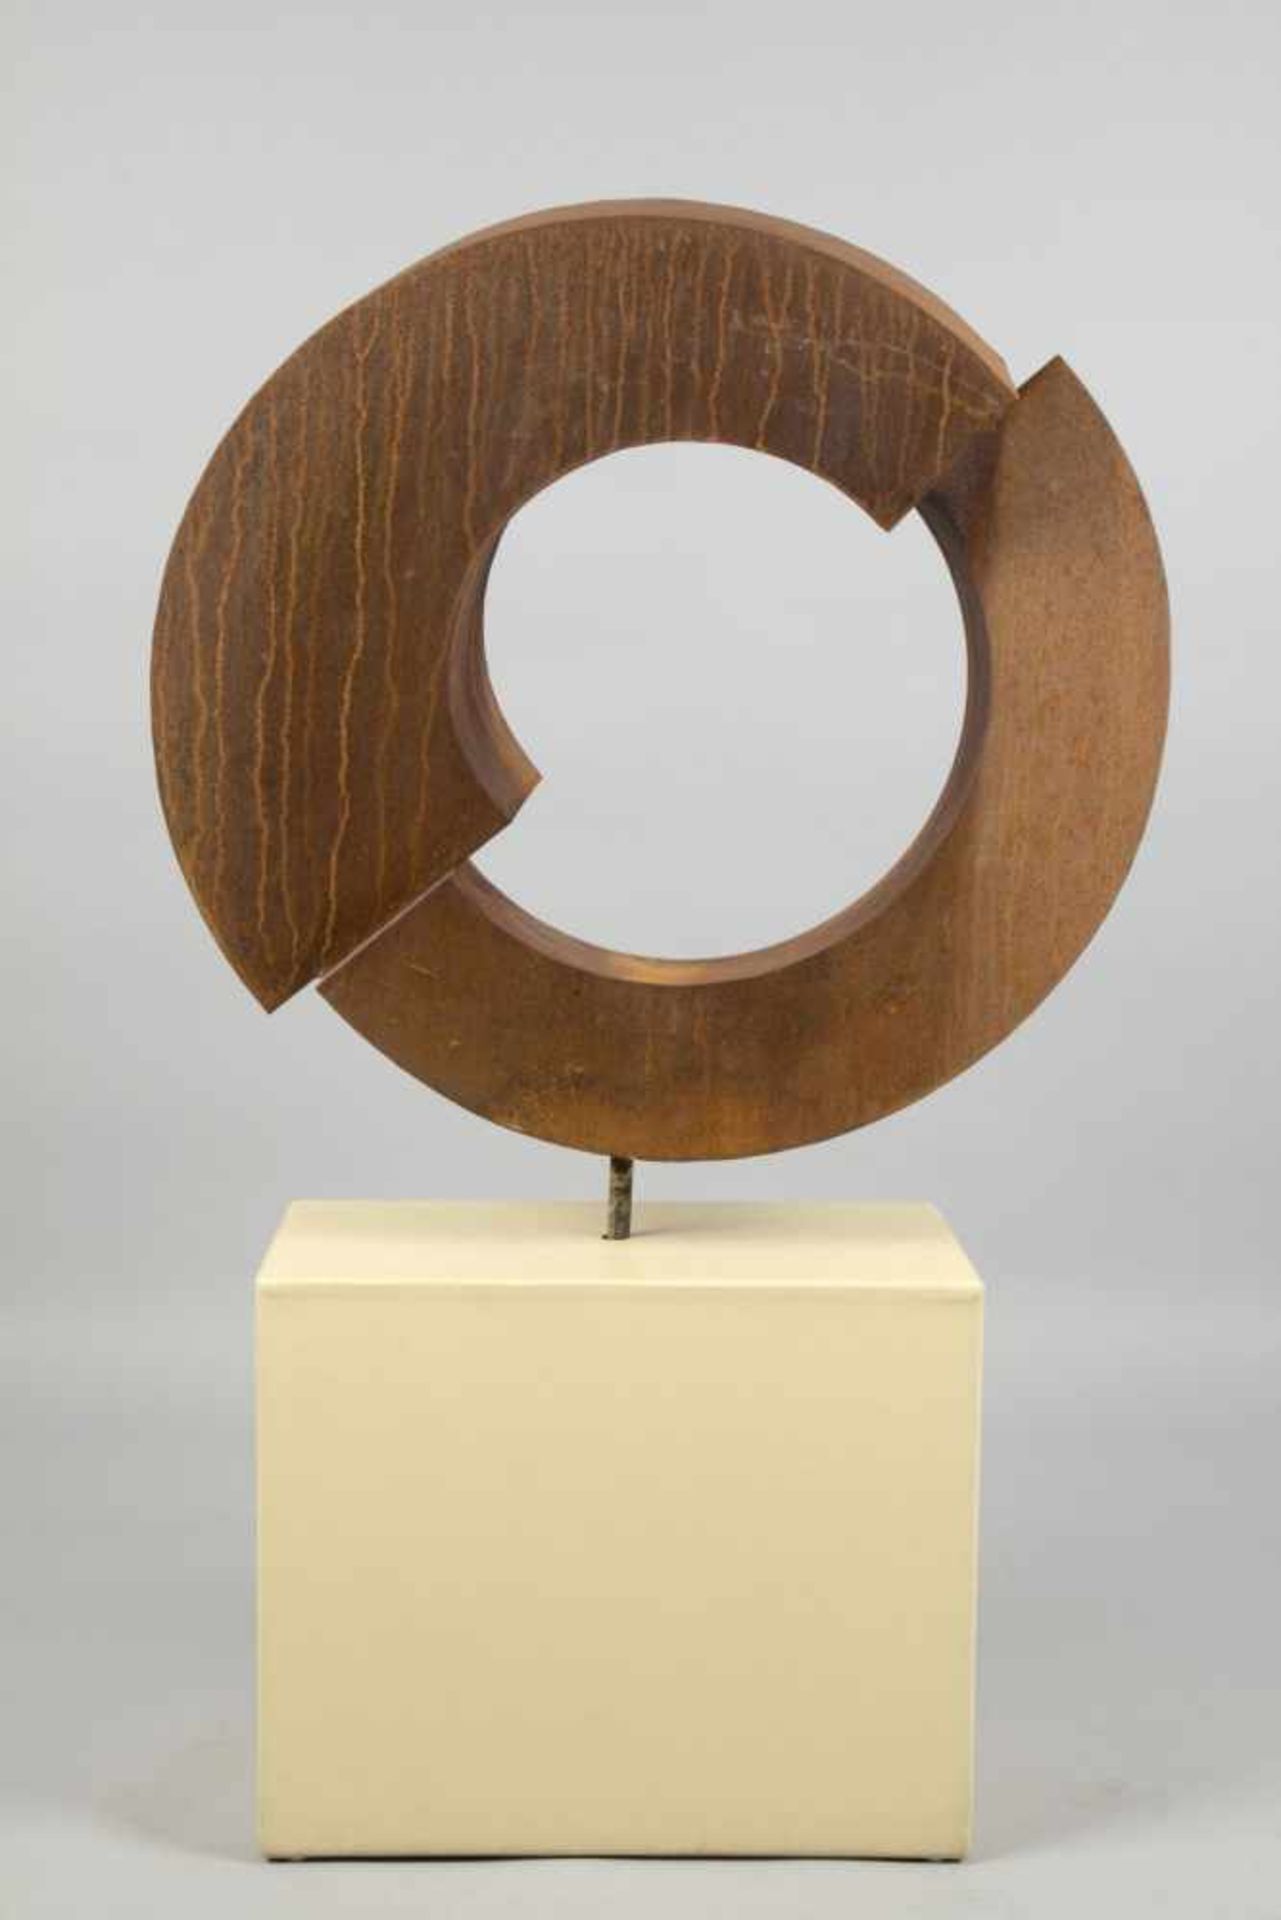 Unbekannt, 20. Jh.Aufgeschnittener Kreis. Skulptur aus korrodiertem Eisen. 81 x 85 cm. Die - Bild 2 aus 8